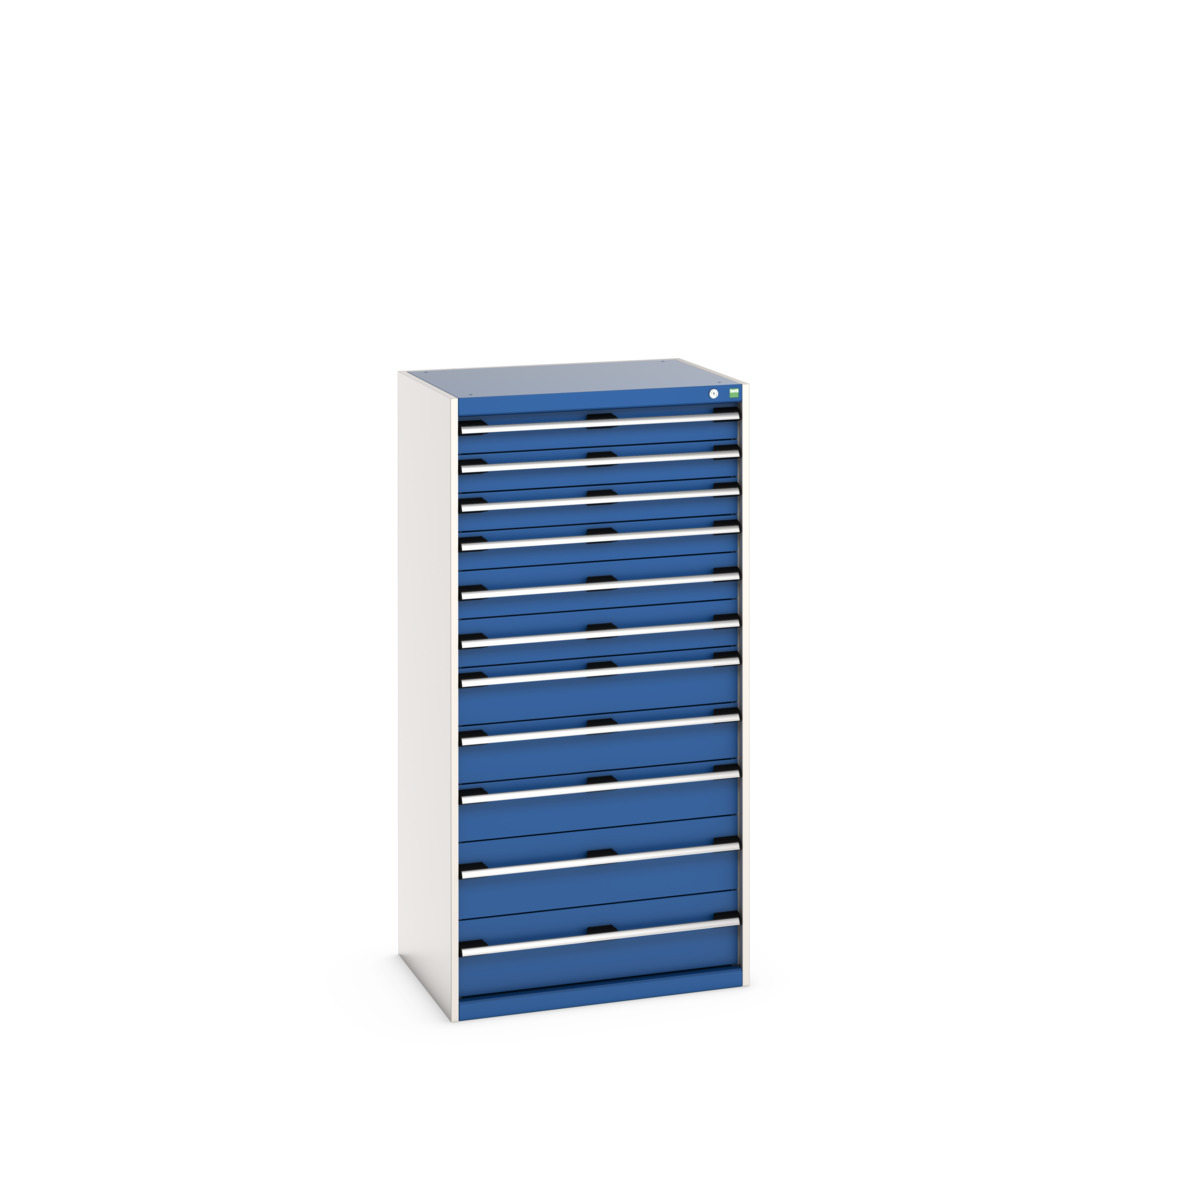 40020069.11V - cubio drawer cabinet